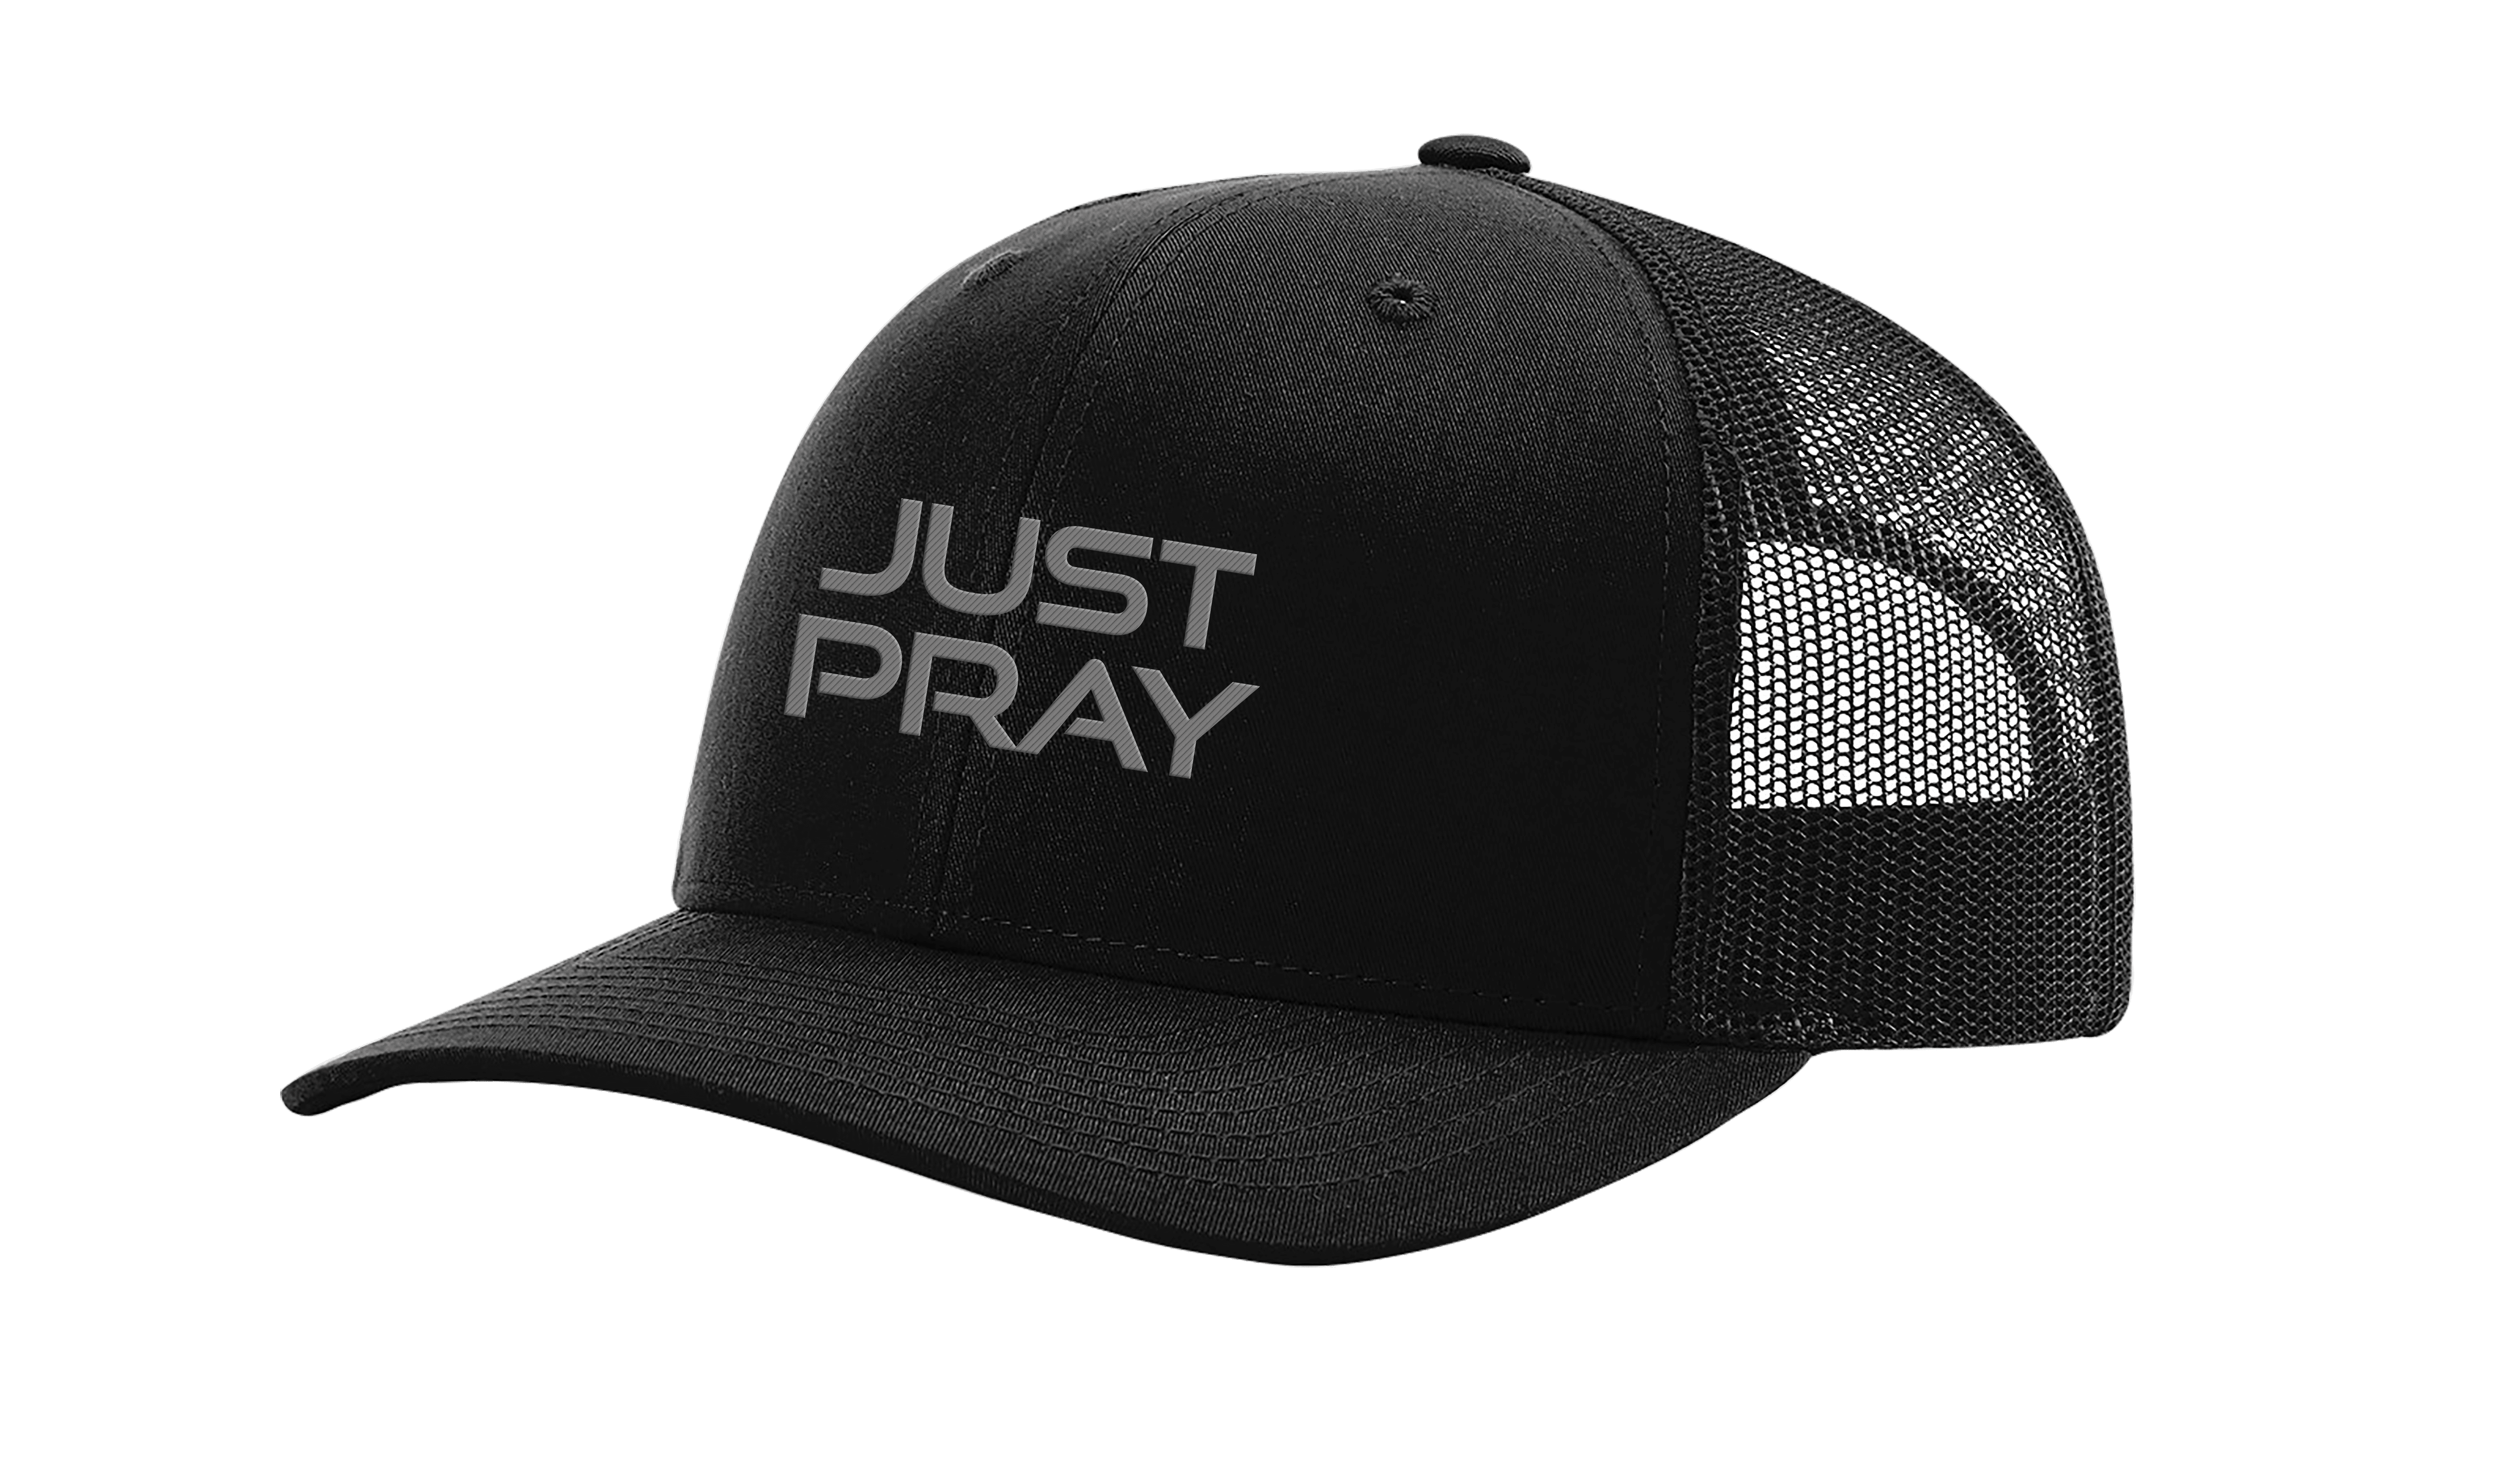 Men's Christian Prayer Embroidered Mesh Back Trucker Cap